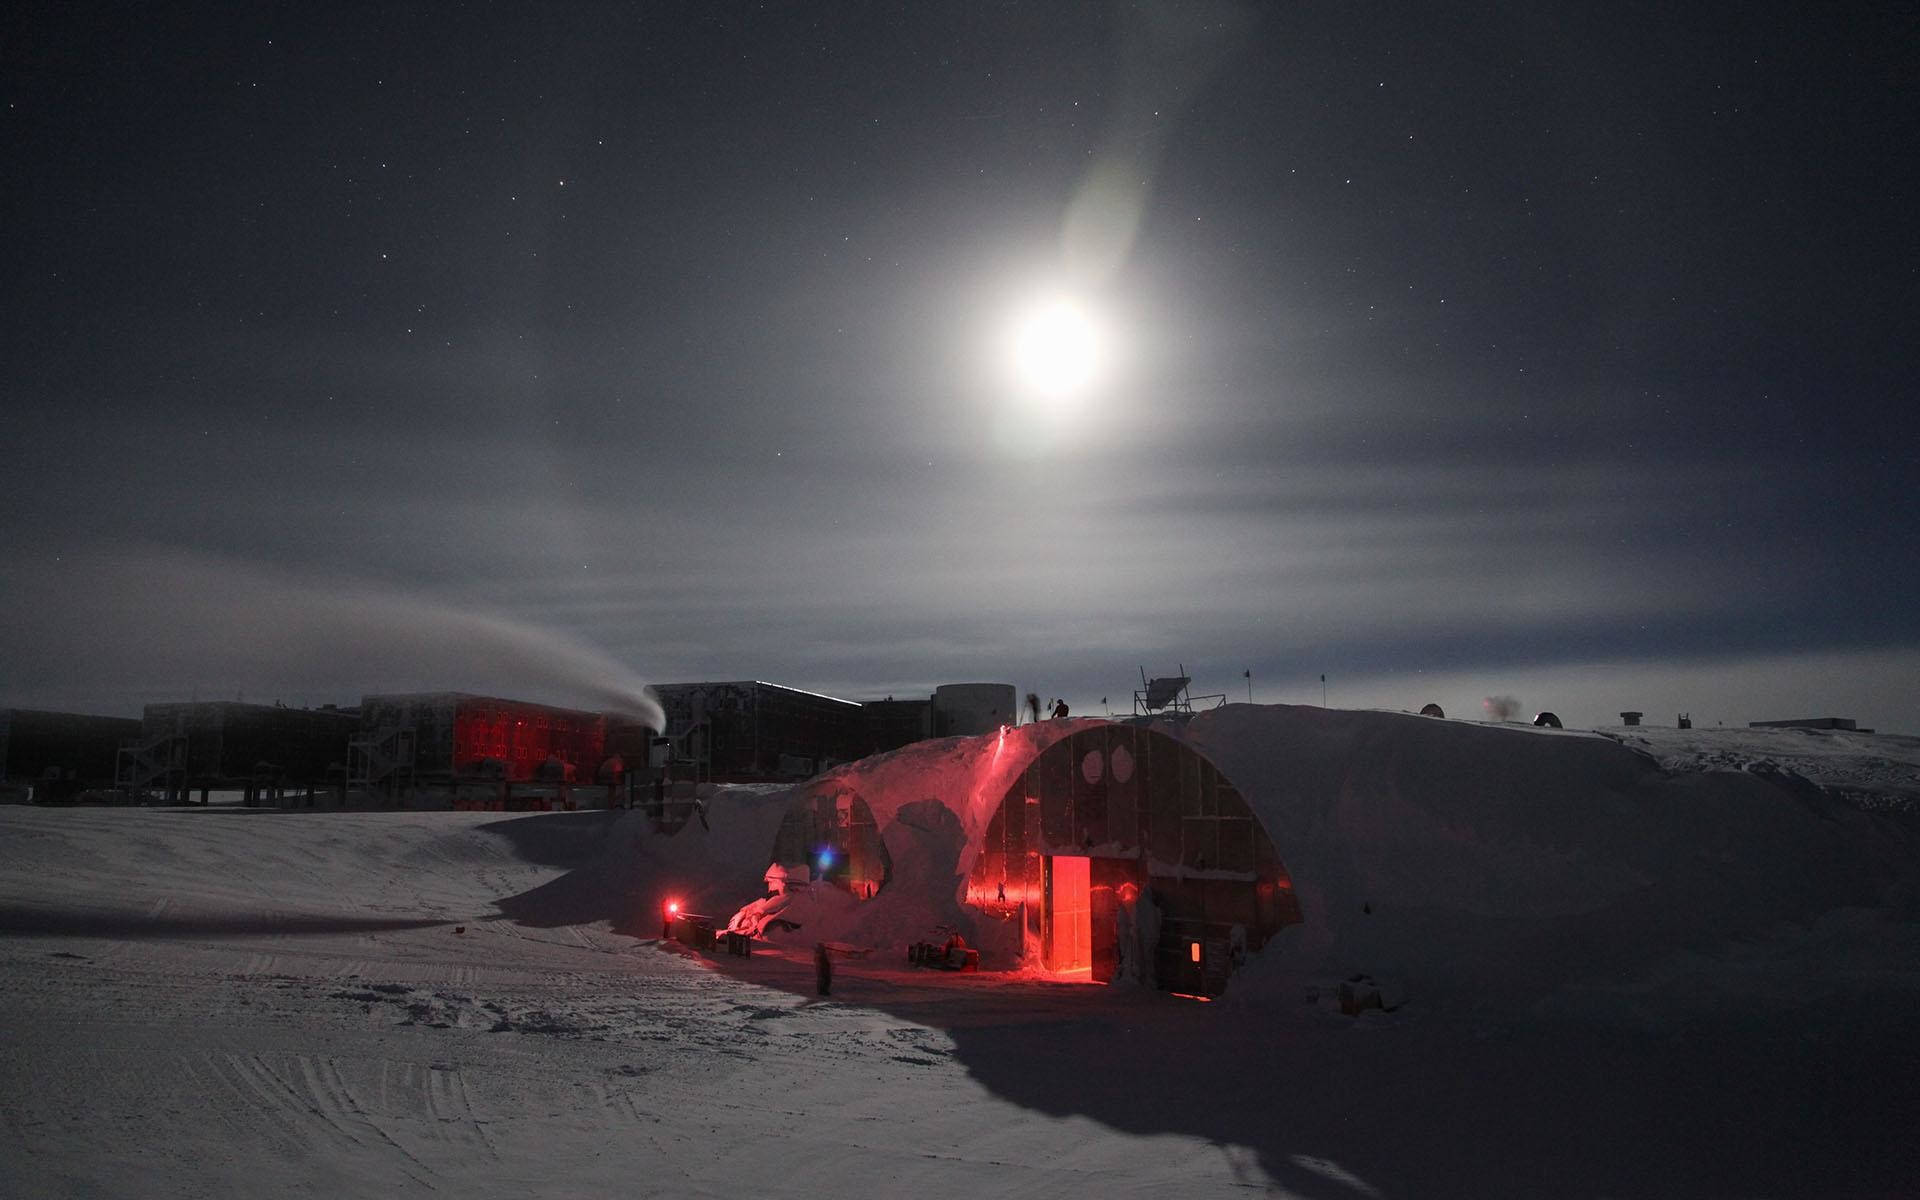 Moonlight Over A Tent In Antarctica